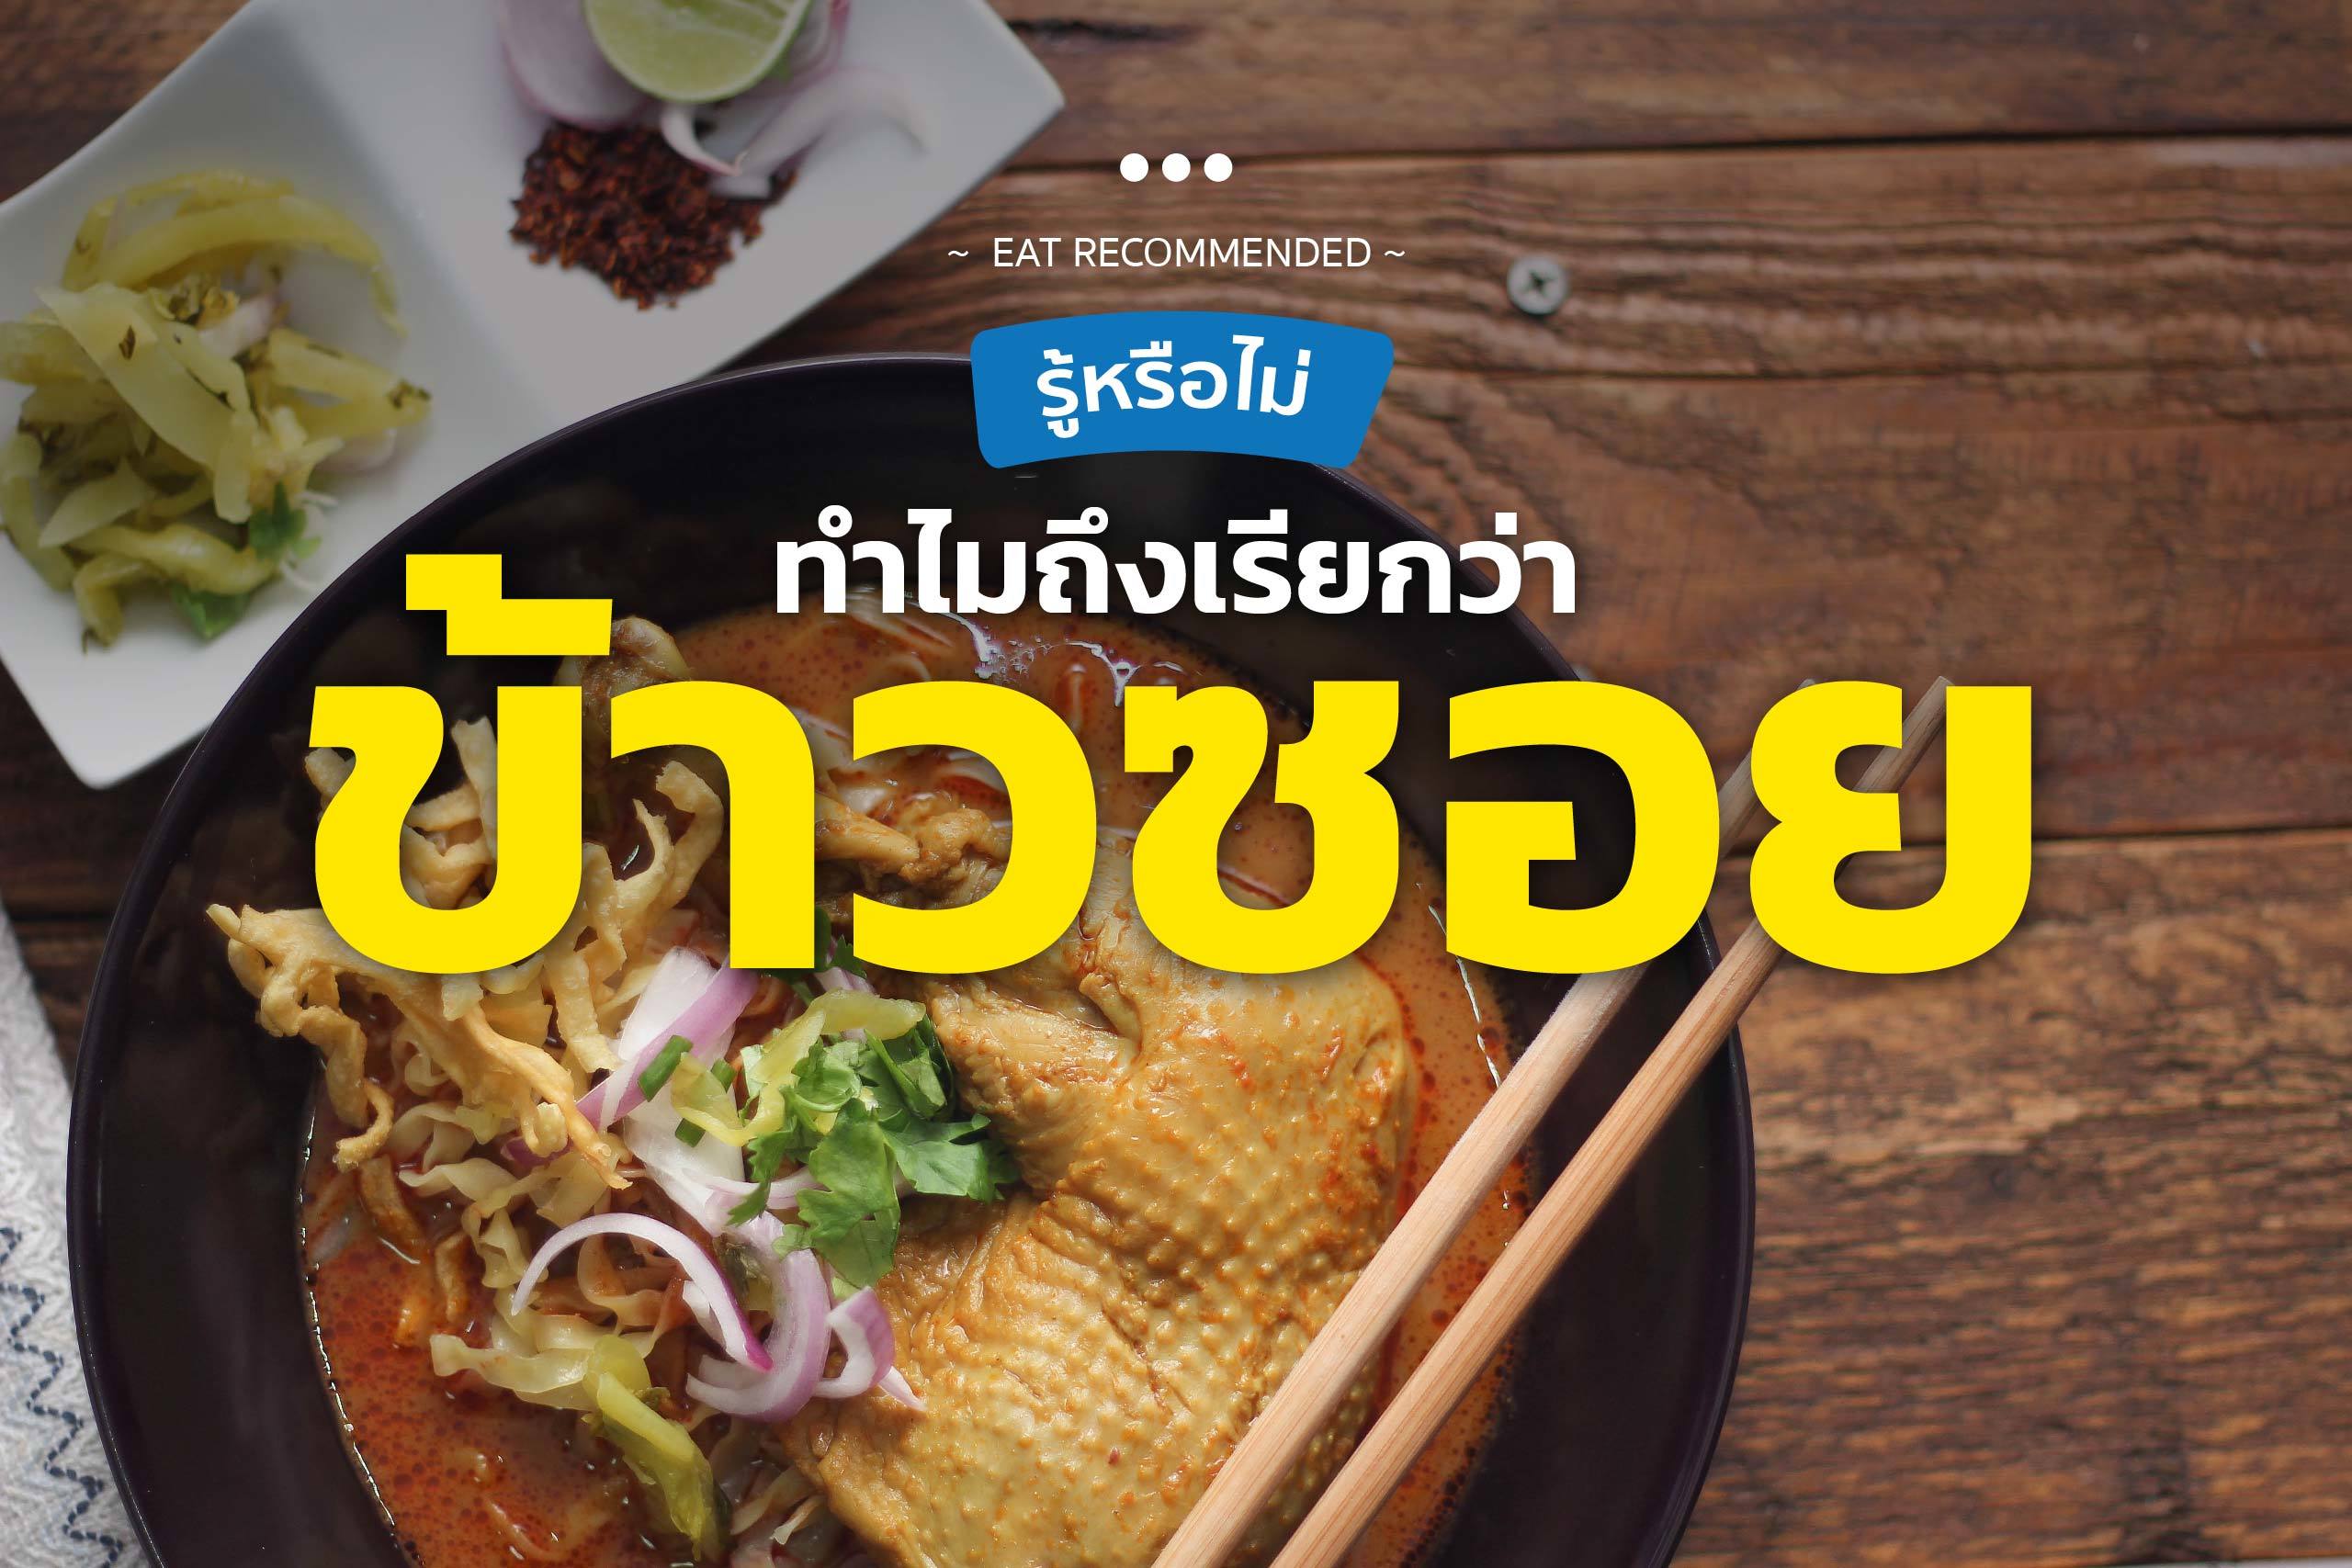 ทำความรู้จักกับ "ข้าวซอย" อาหารประจำภาคเหนือของไทย